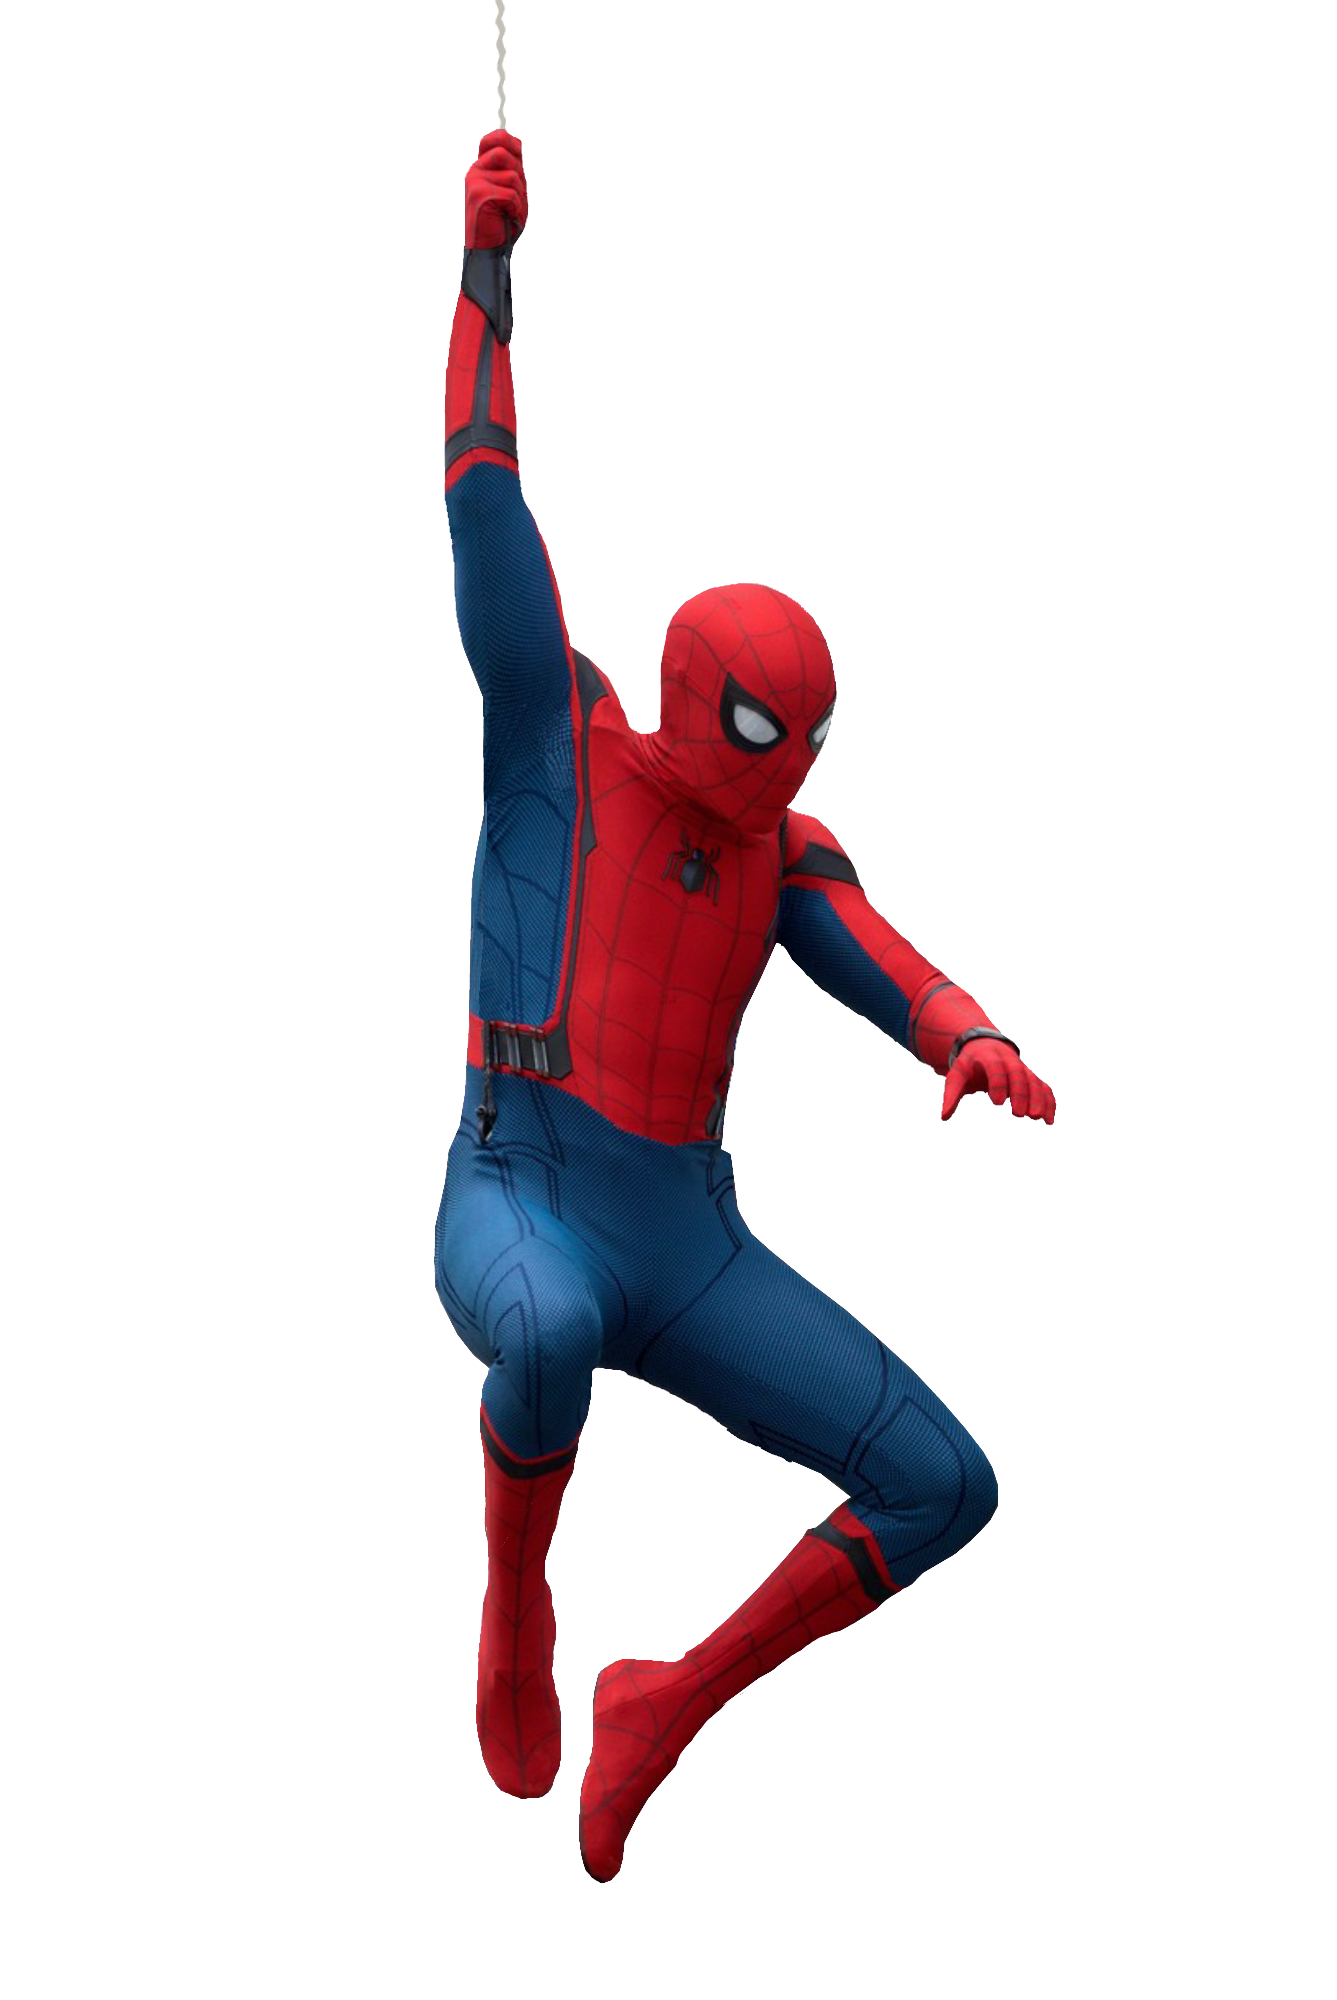 Spider-Man - Transparent by Asthonx1 on DeviantArt